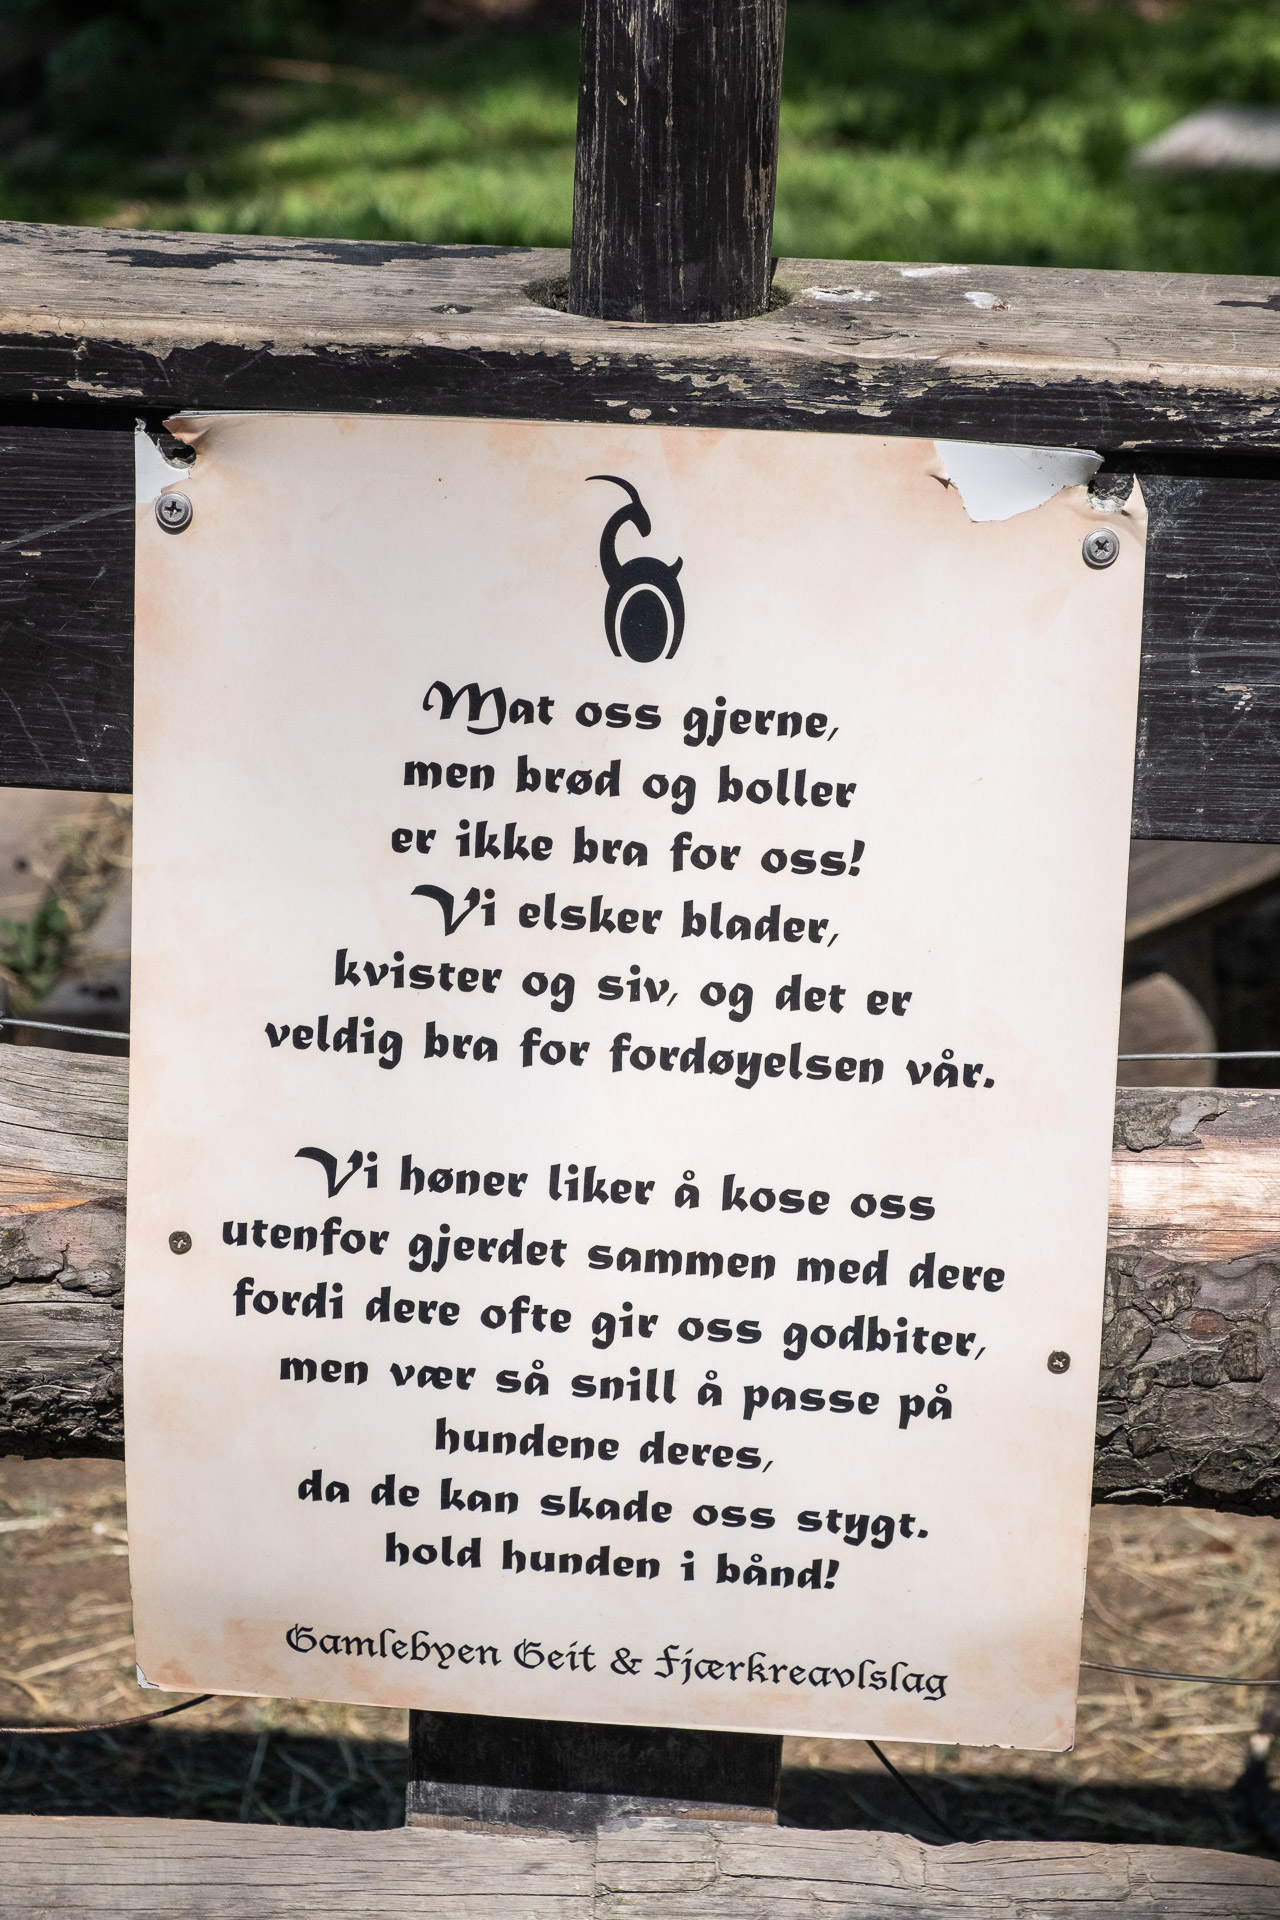 a sign from gamlebyen geit & fjærkreavlslag